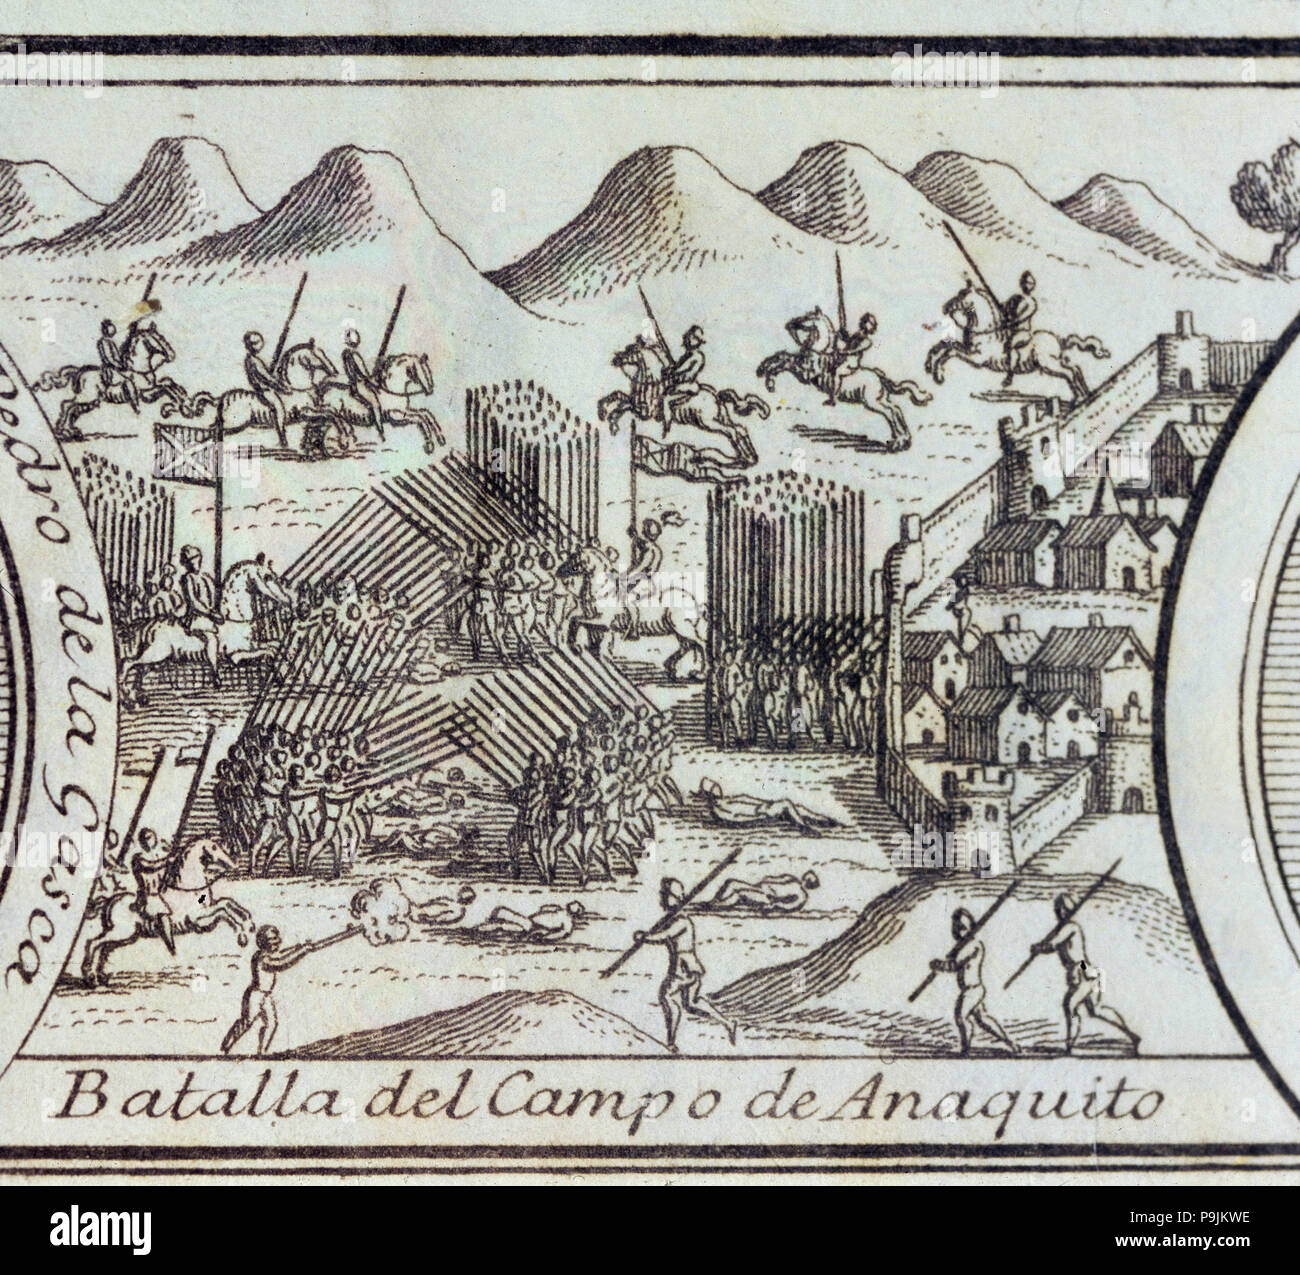 Conquête du Pérou, 3e guerre civile, 'Bataille d'Añaquito le champ' (maintenant l'Équateur), bataille qui fait face … Banque D'Images